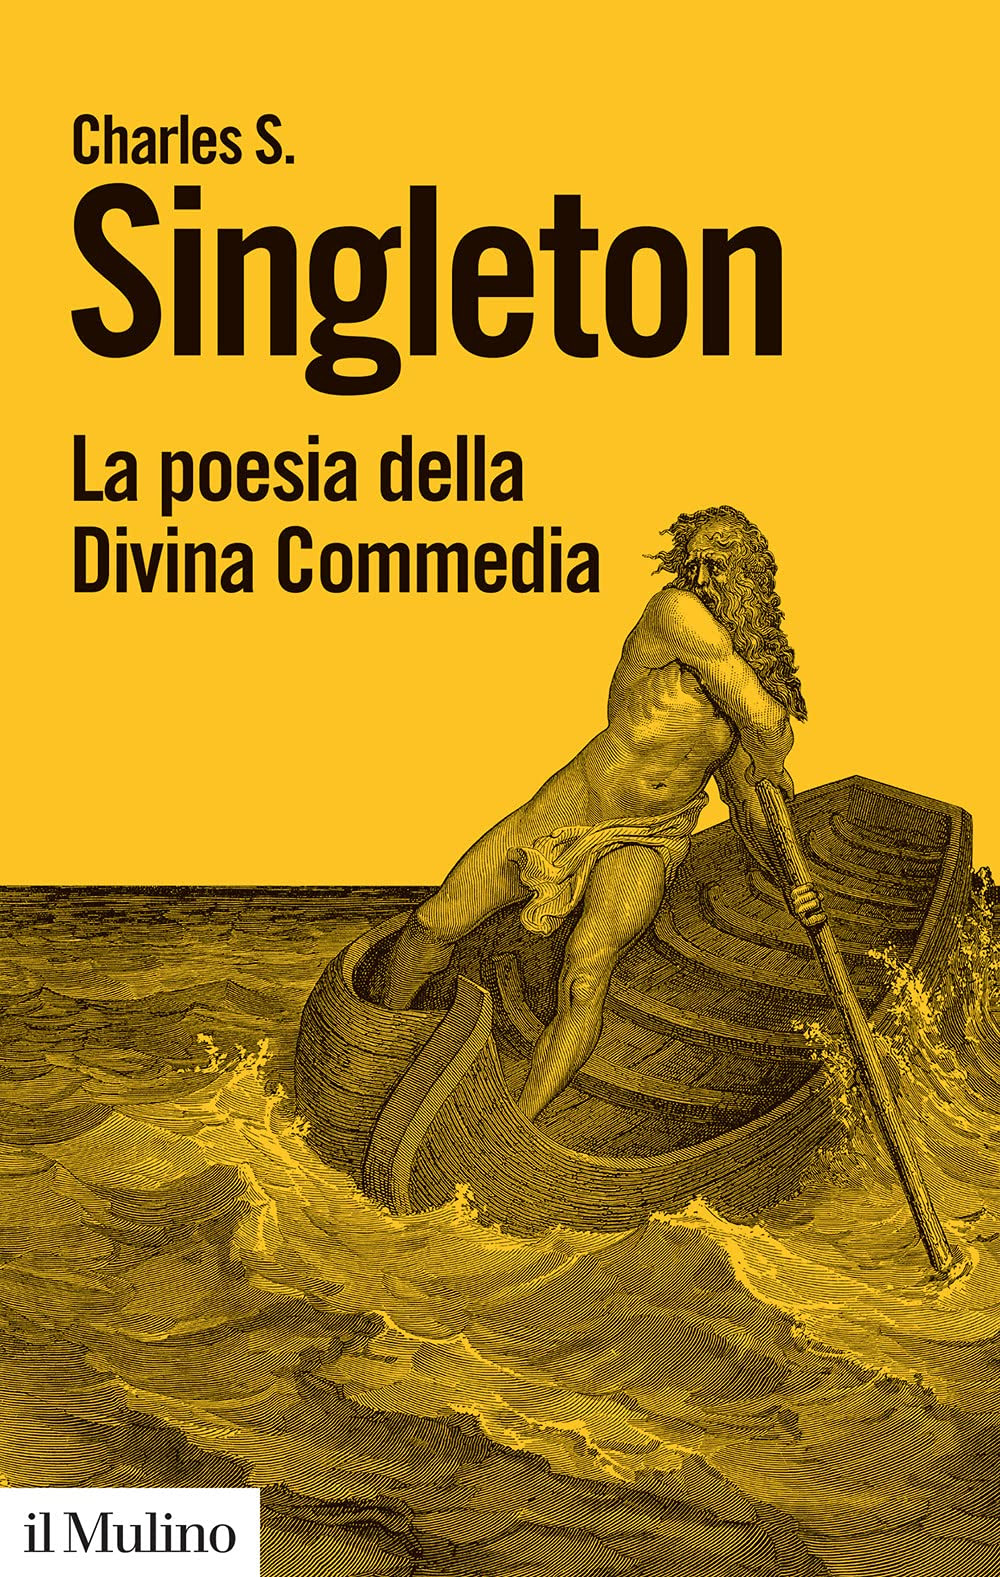 La poesia della Divina Commedia in Kindle/PDF/EPUB